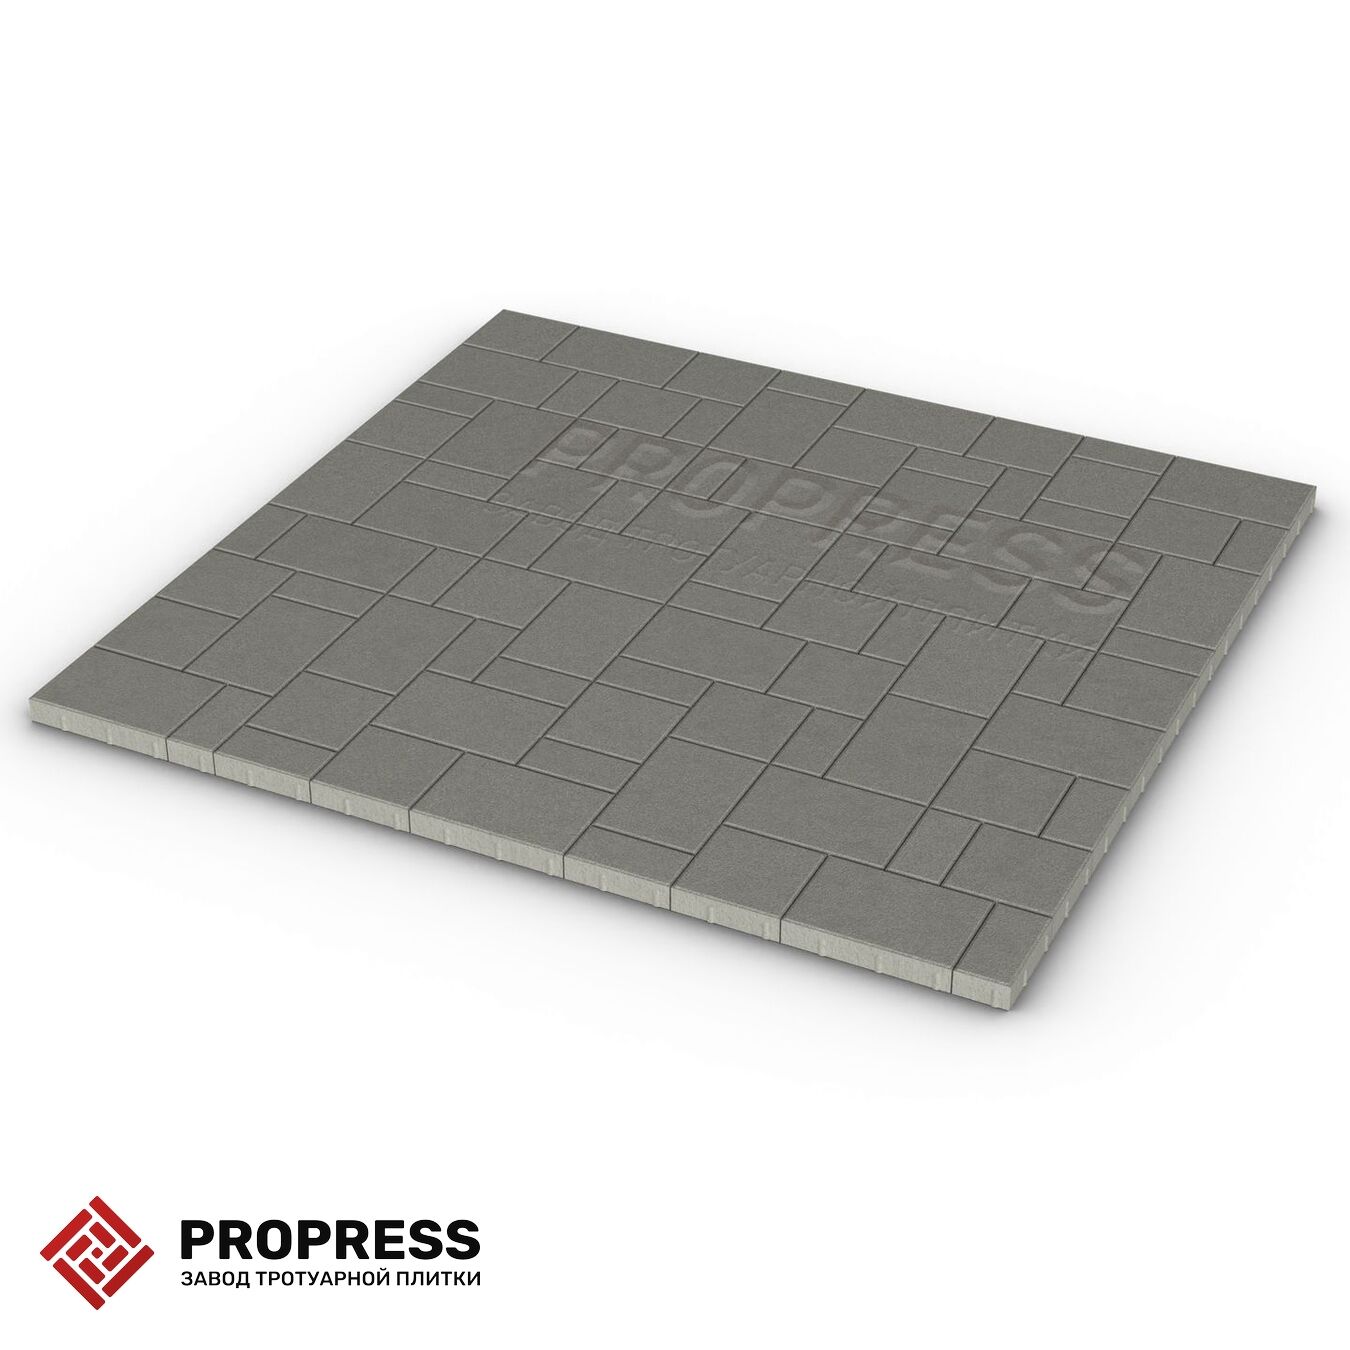 Тротуарная плитка Пропресс Лэндхаус Серый зернистый 40 мм